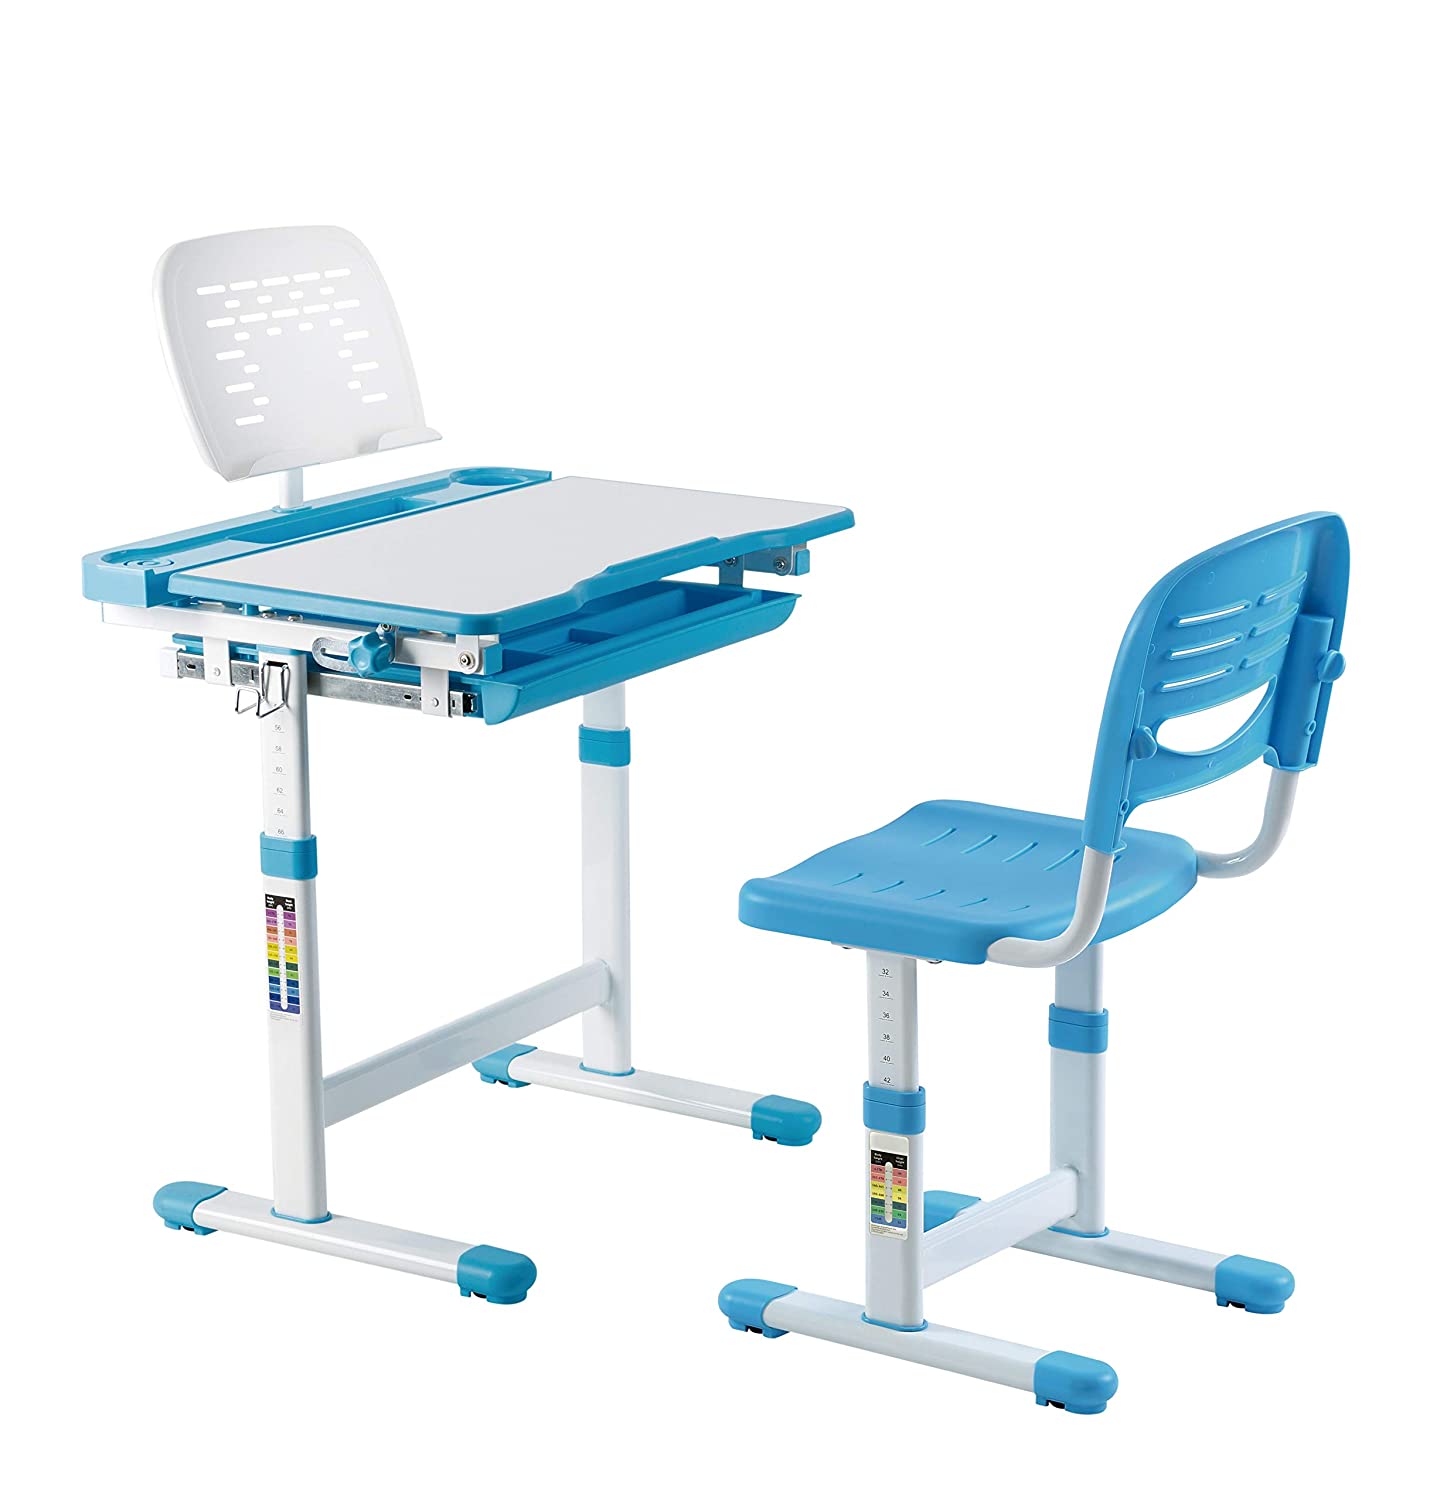 Kidomate Kids Auto Height Adjustable Study Desk